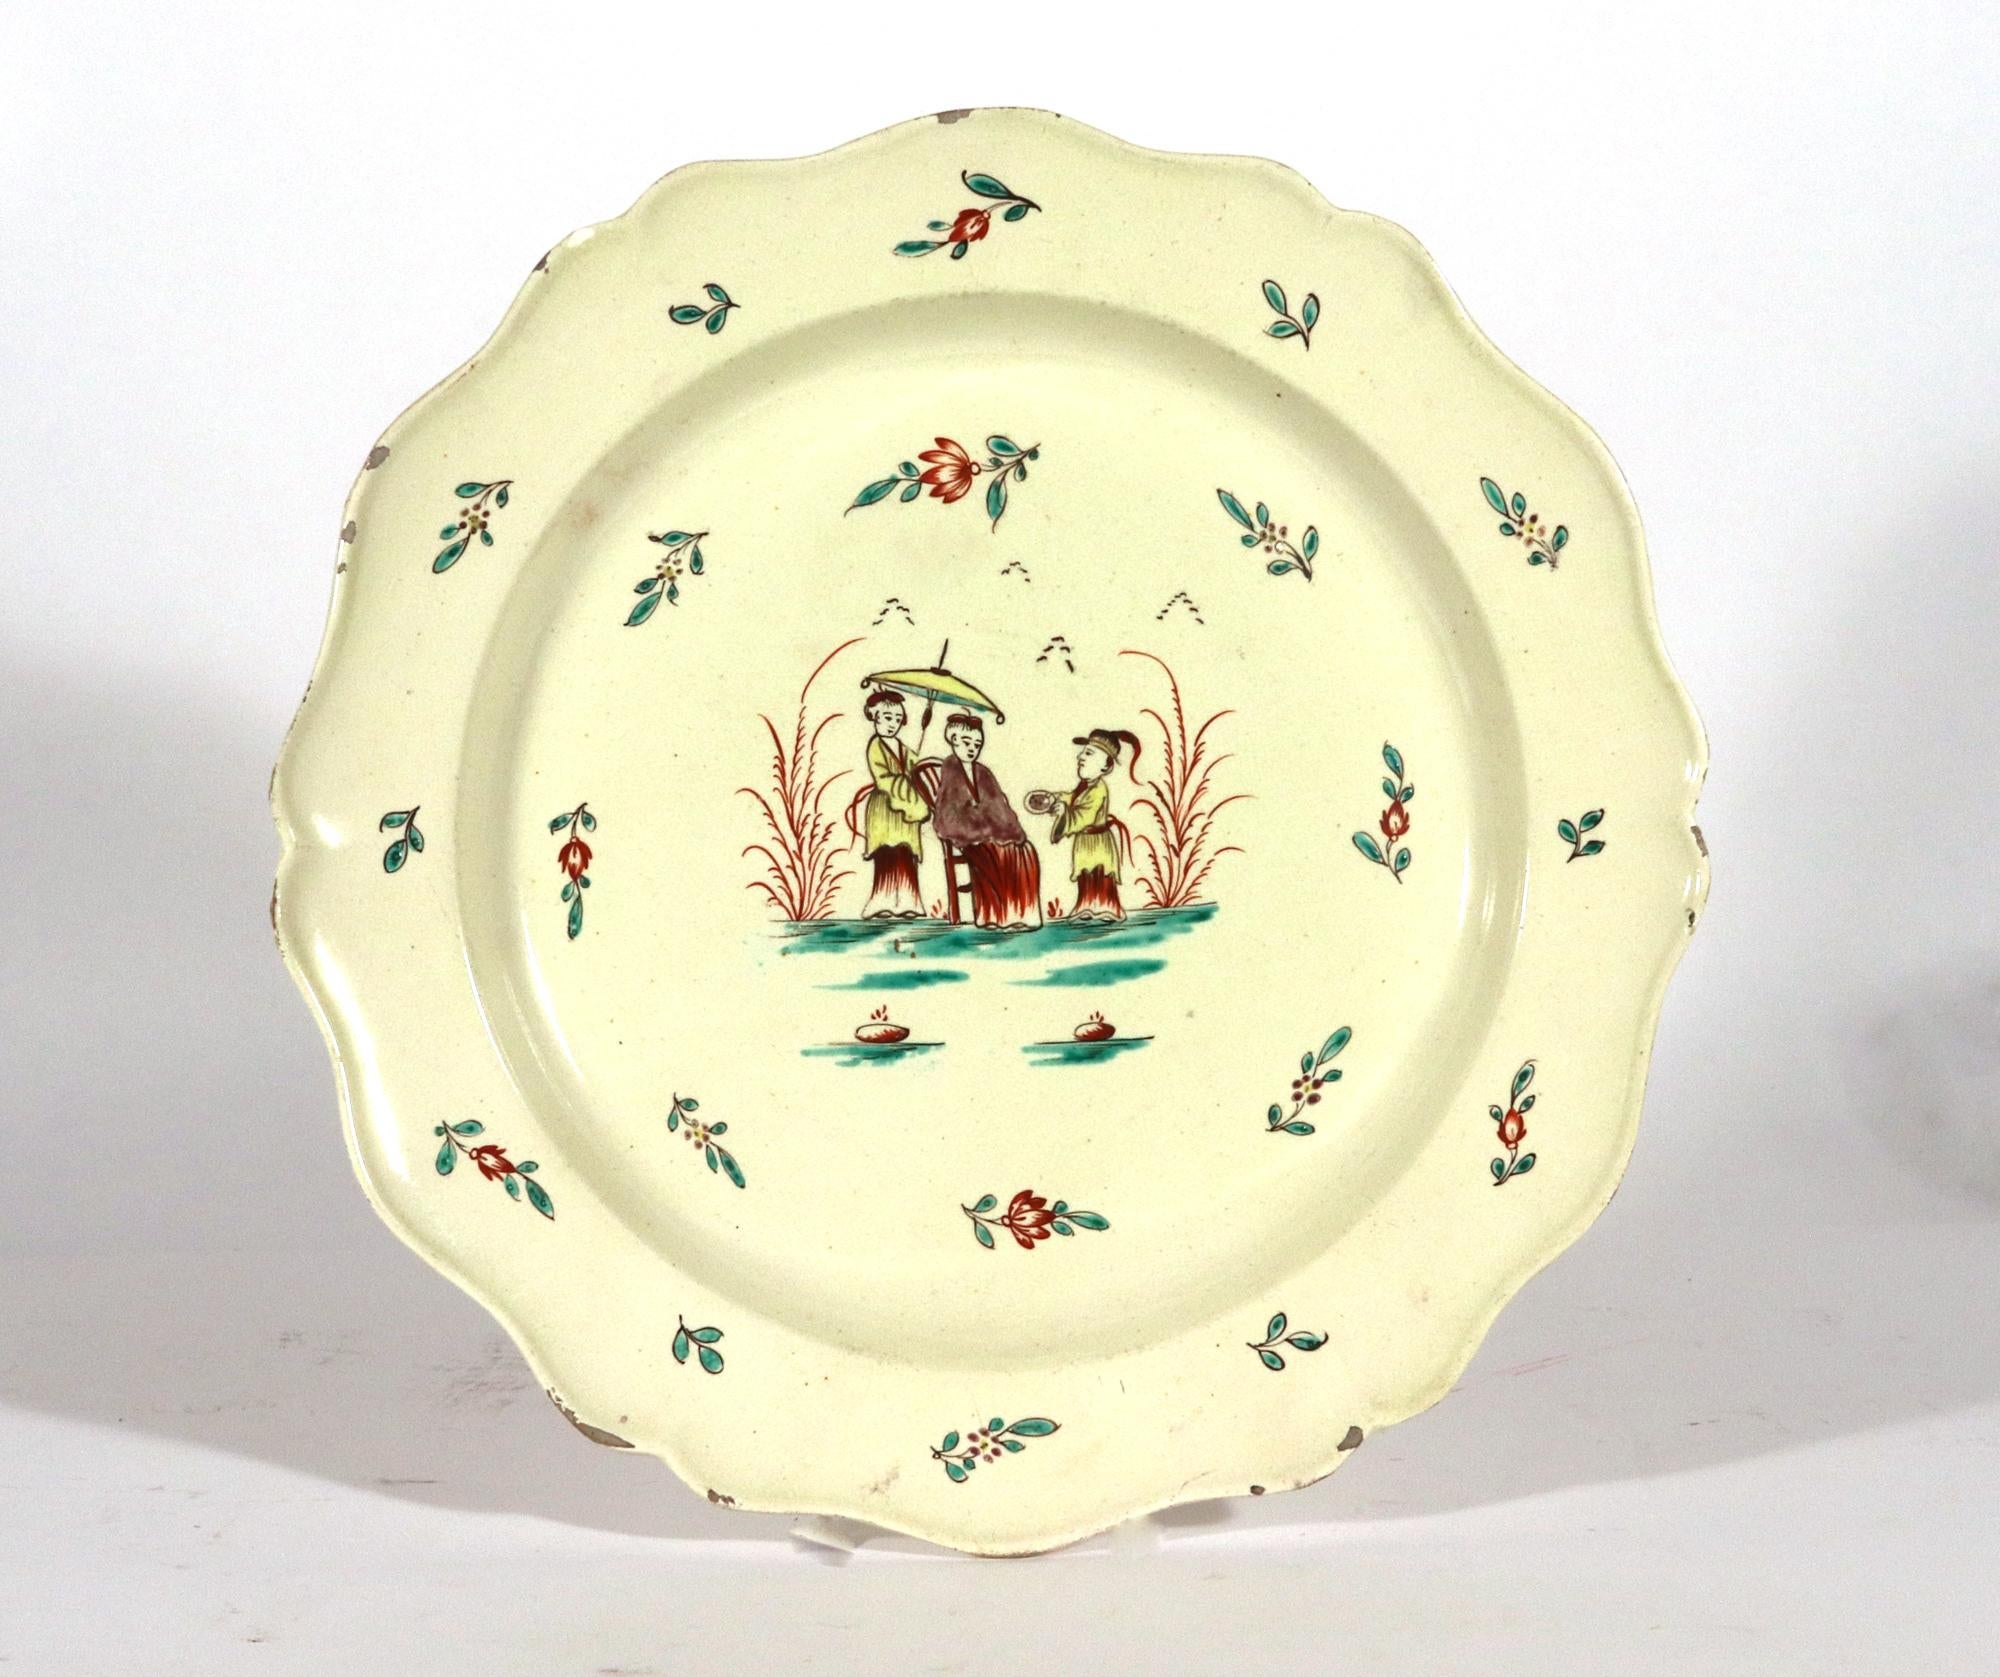 Grands plats en Creamware avec décoration Chinoiserie,
Vers 1775-85.

Les grands plats en crème ont un bord en forme avec un rebord légèrement moulé et surélevé.  Le centre est orné d'un motif de Chinoiserie représentant une dame chinoise assise sur